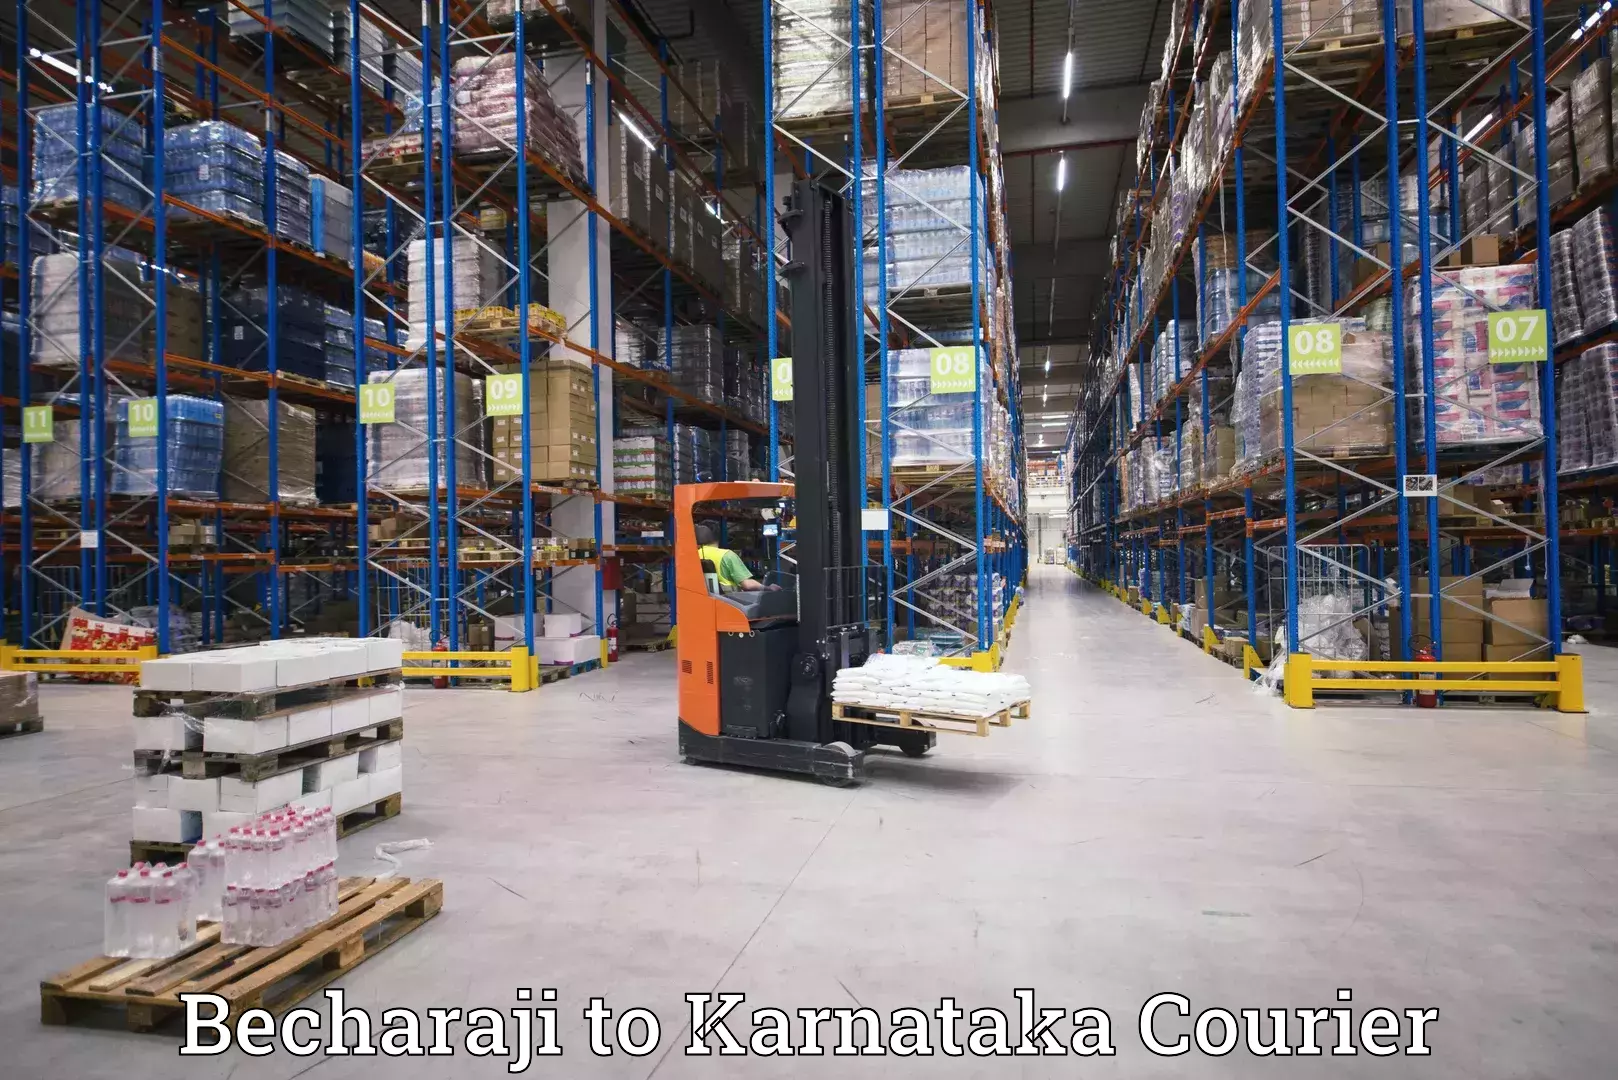 Logistics service provider Becharaji to Harohalli